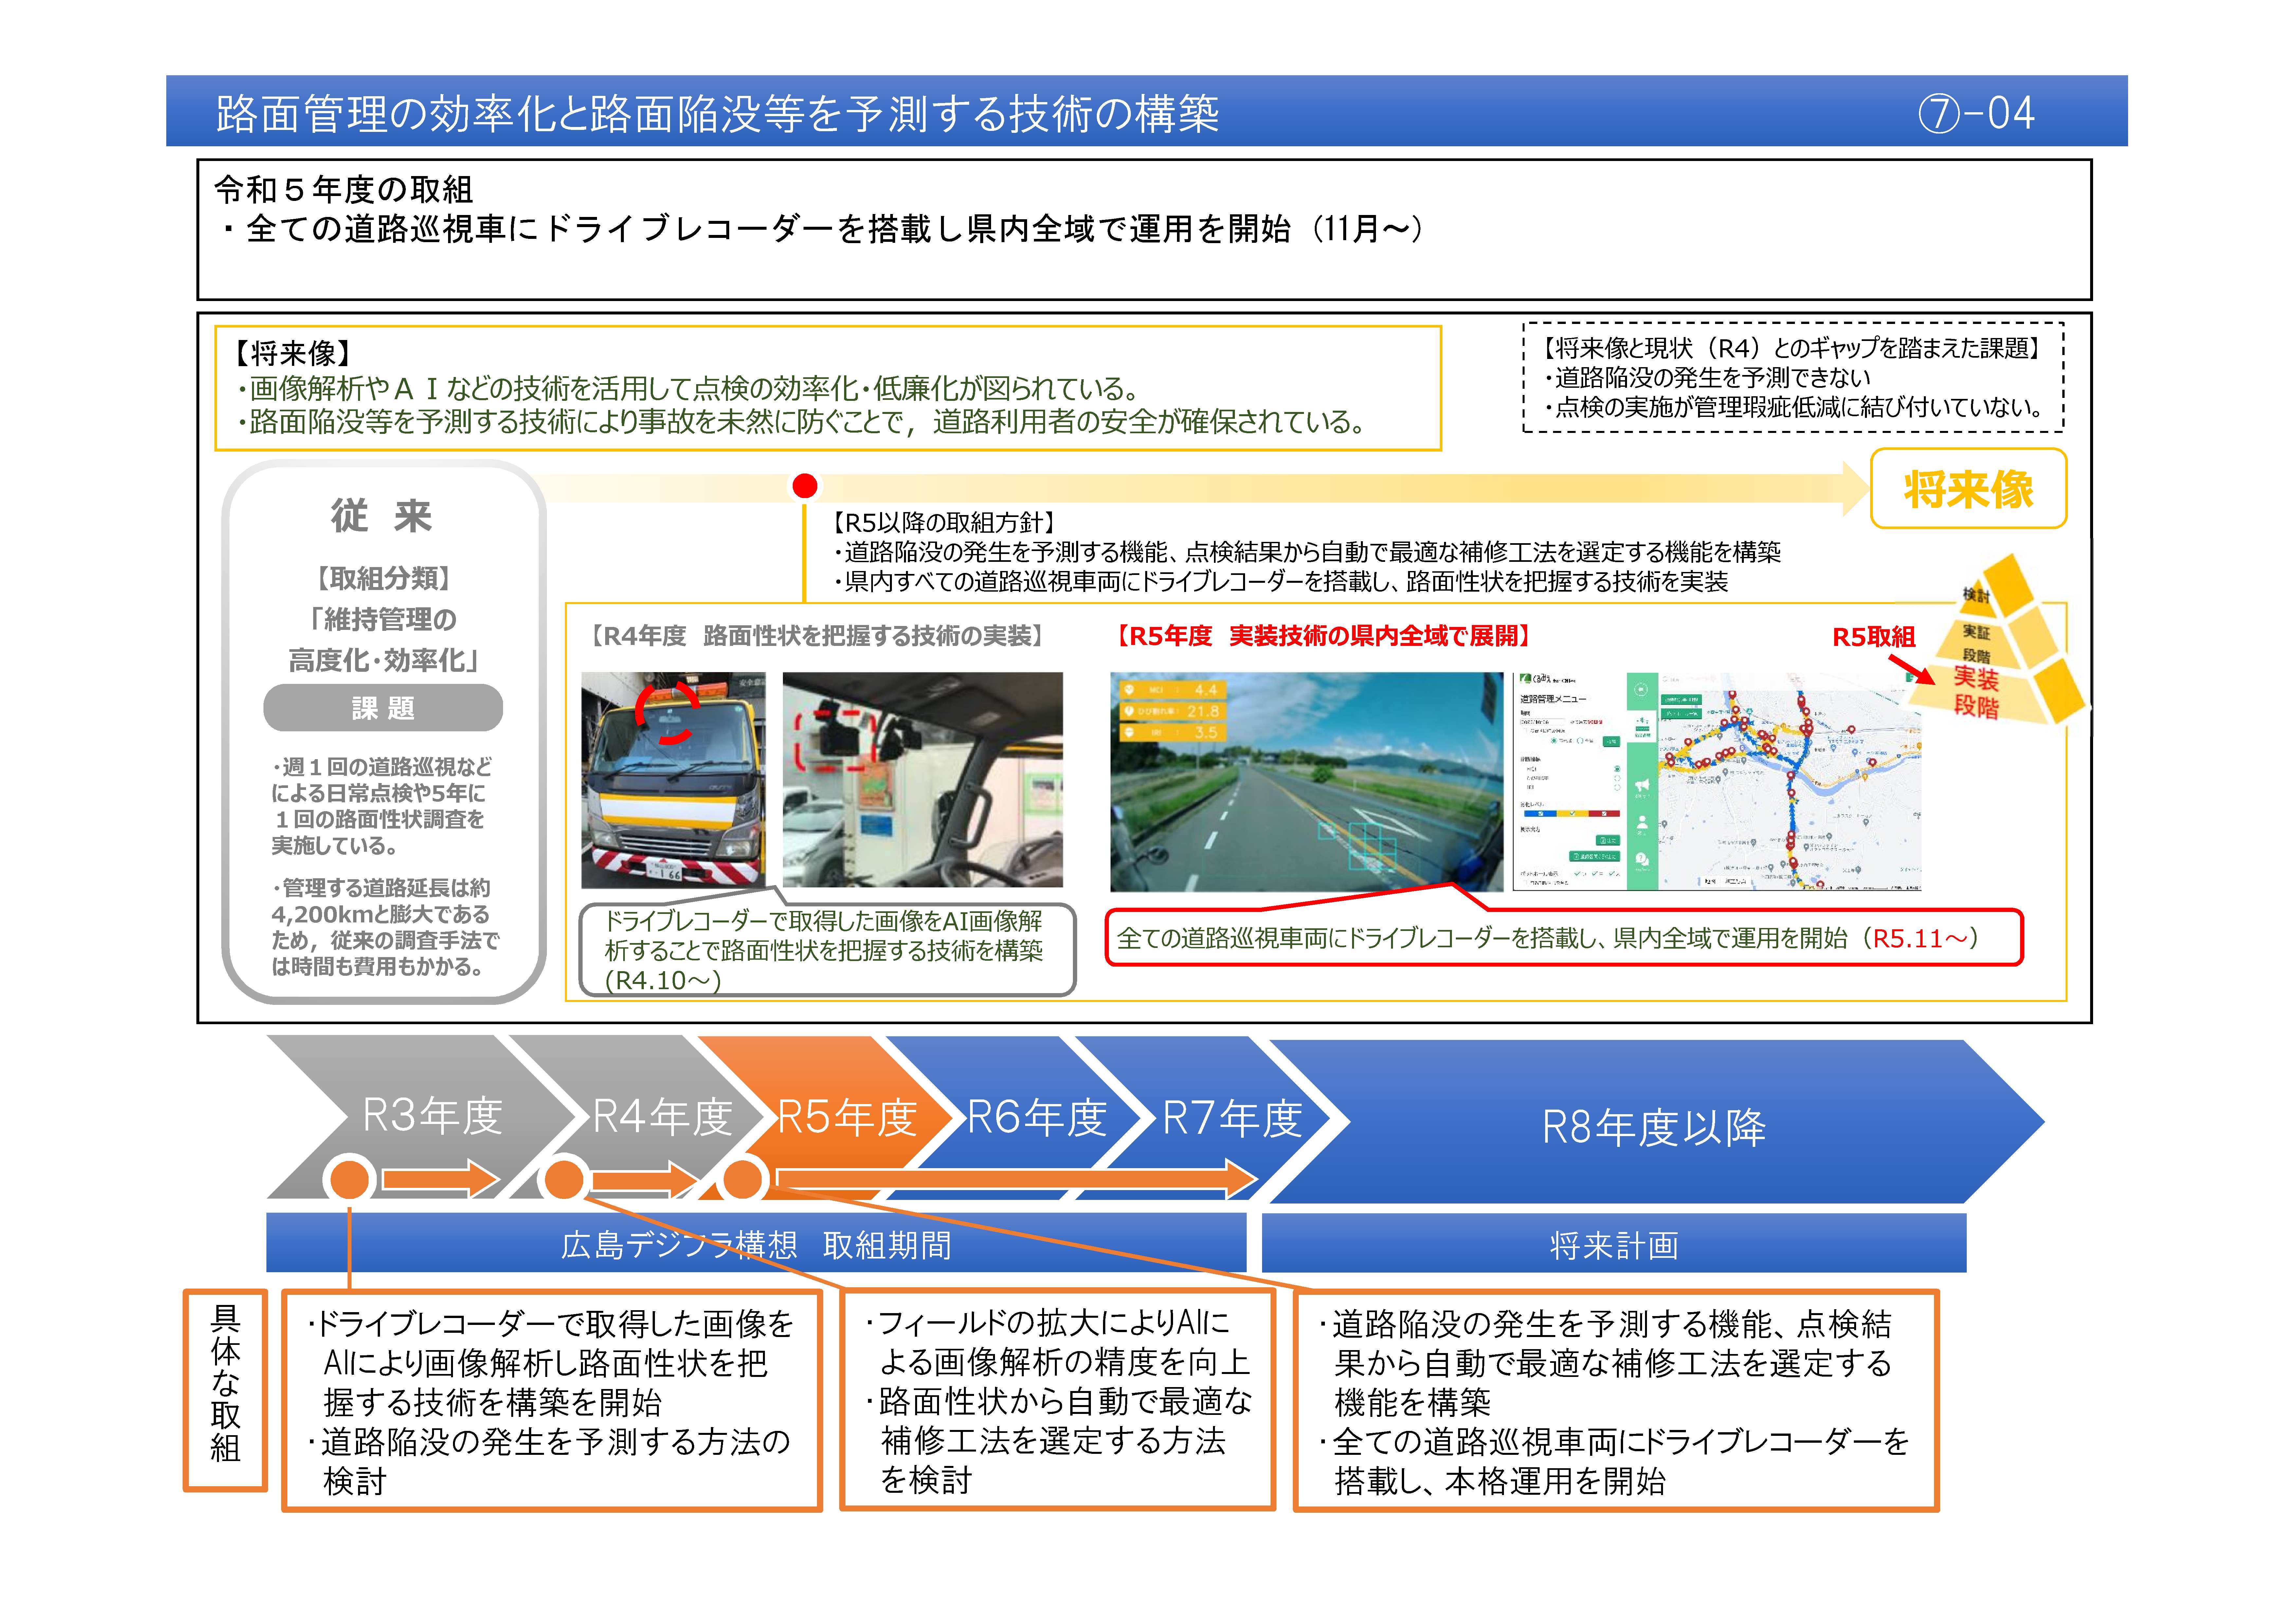 【(7)-4】路面管理の効率化と路面陥没等を予測する技術の構築